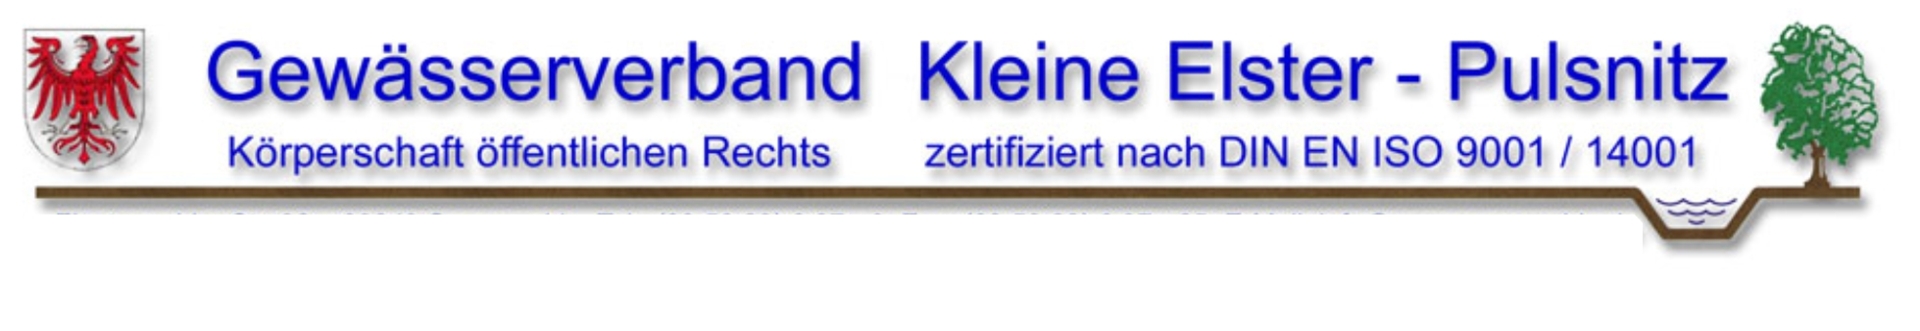 2024/6 Gewässerverband KleineElster